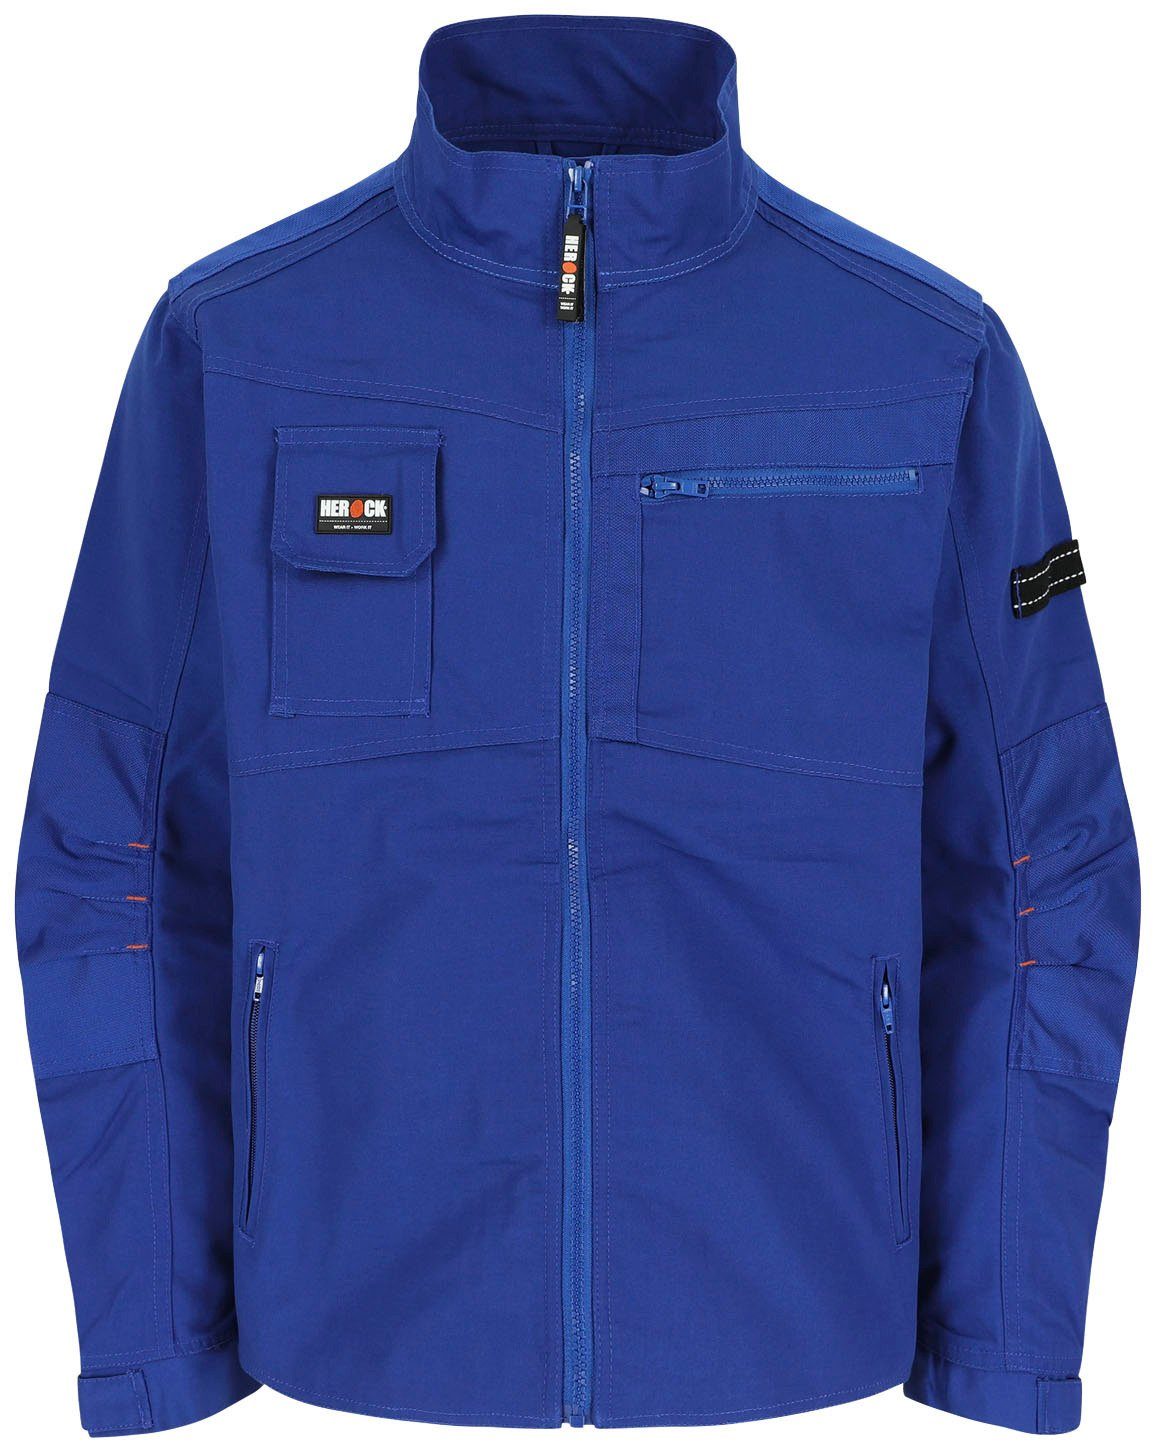 Herock Arbeitsjacke Anzar Jacke Wasserabweisend - 7 Taschen - robust - verstellbare Bündchen blau | Arbeitsjacken